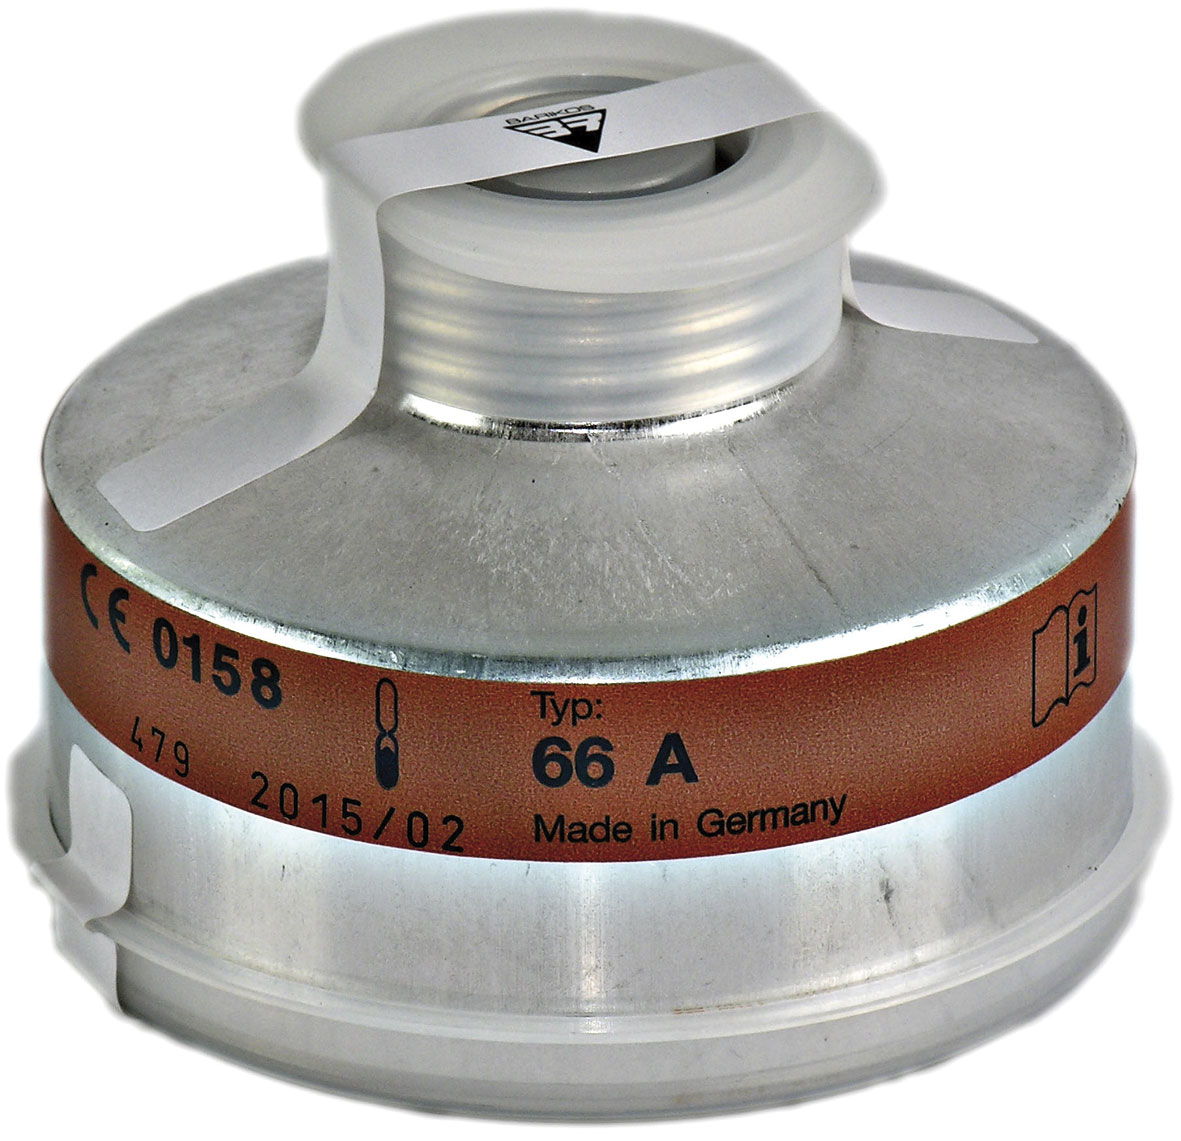 Filtro respiratorio rosca para gases y vapores orgánicos p.e.&lt;65º. Clase protección: AX. BARIKOS